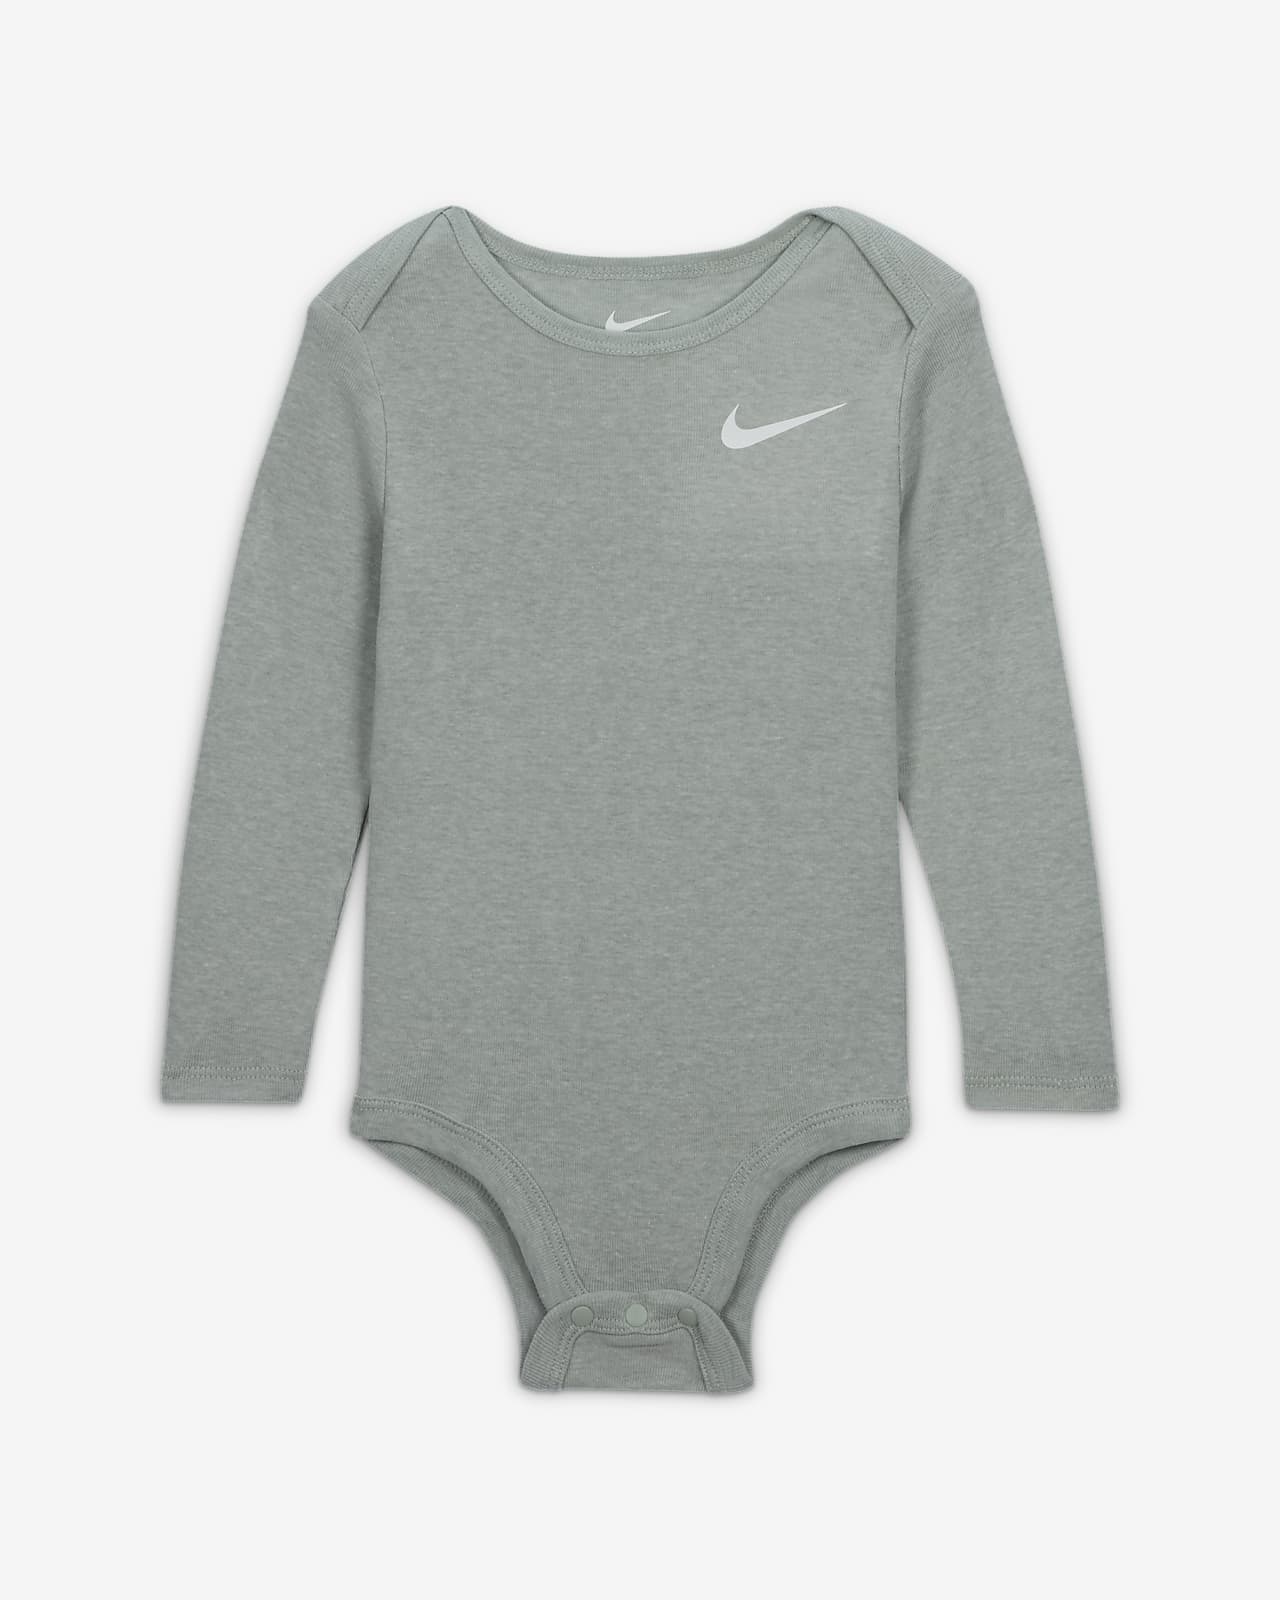 3-Piece Pants Nike Set. Set Essentials Baby 3-Piece